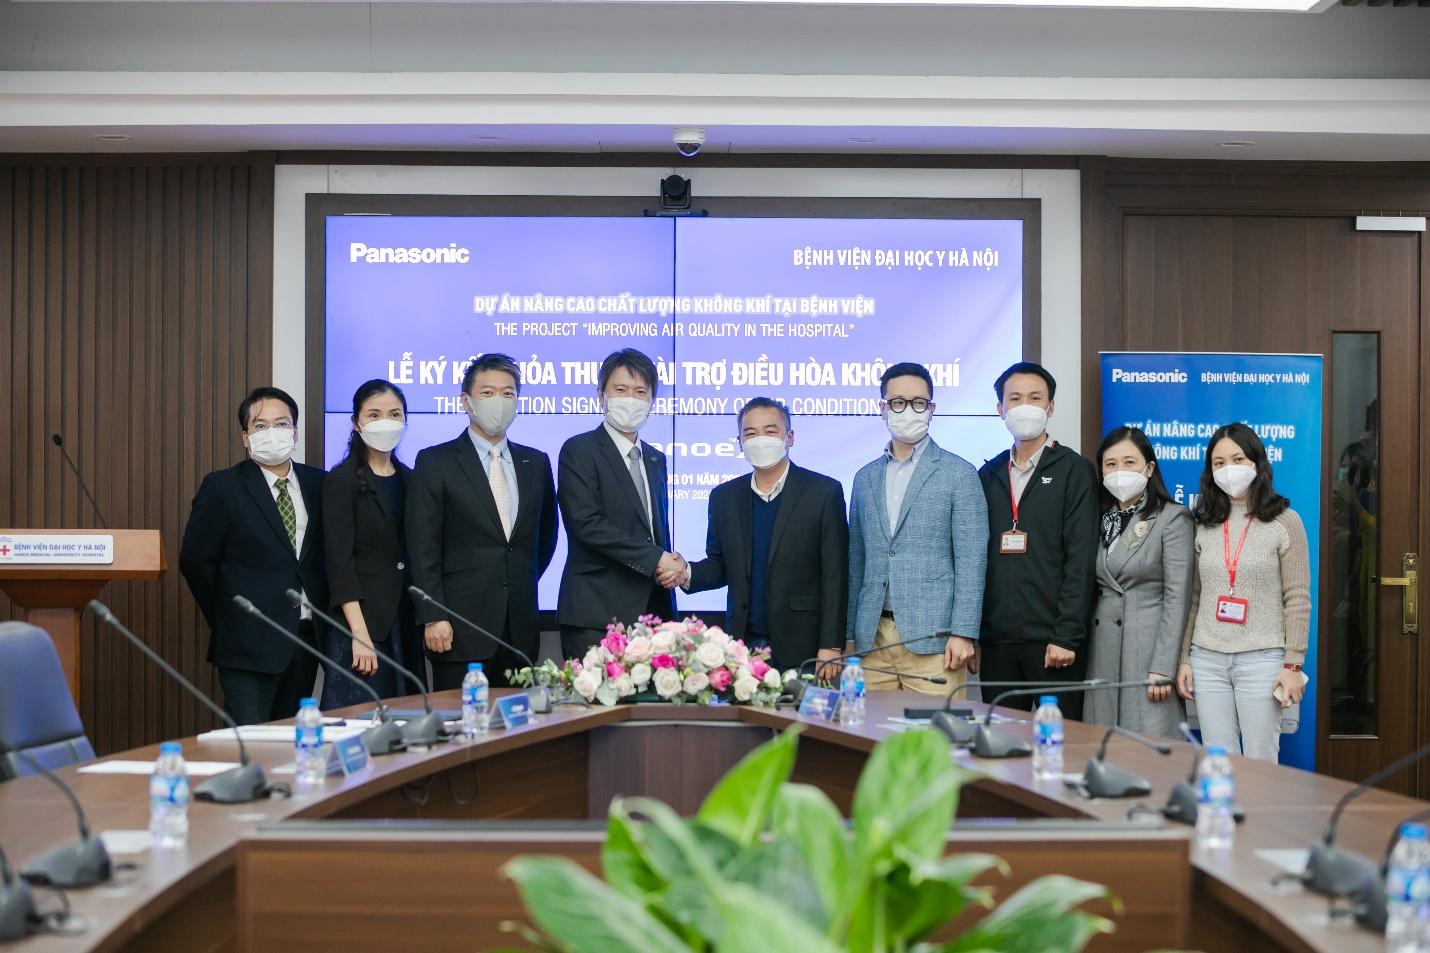 Panasonic trao tặng 261 máy điều hòa nâng cao chất lượng không khí cho 3 bệnh viện lớn ở Hà Nội - fTBF2mMN txK b6SkVO2c ryjPHjd7IaatKk0KWHMhZyQH